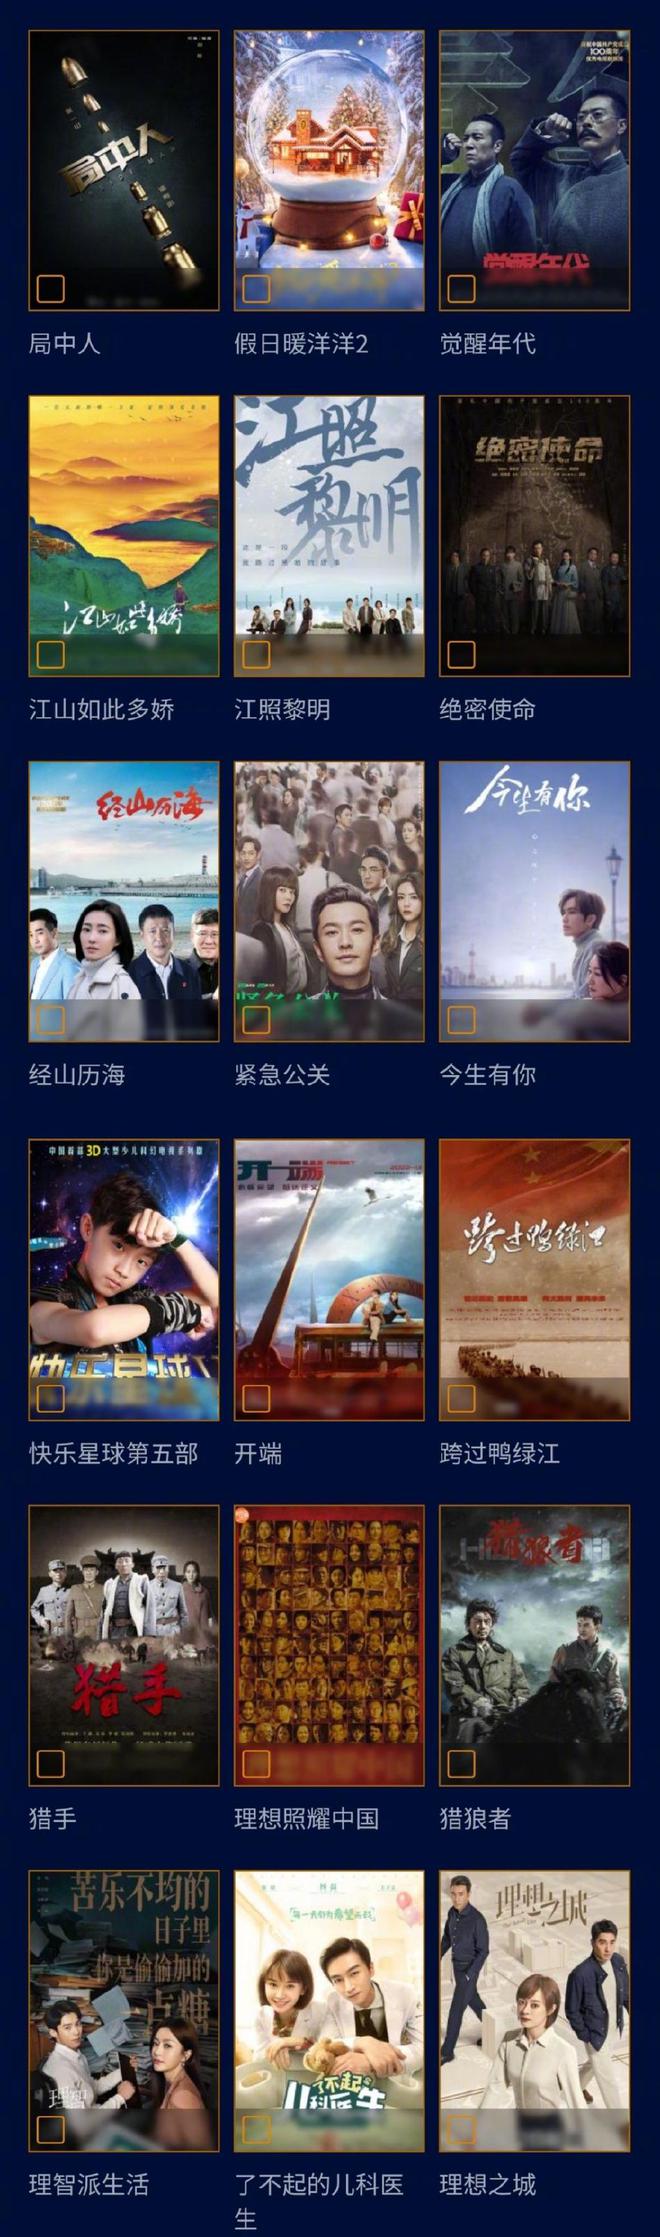 第31届中国电视金鹰奖候选名单公布 多部热剧入围